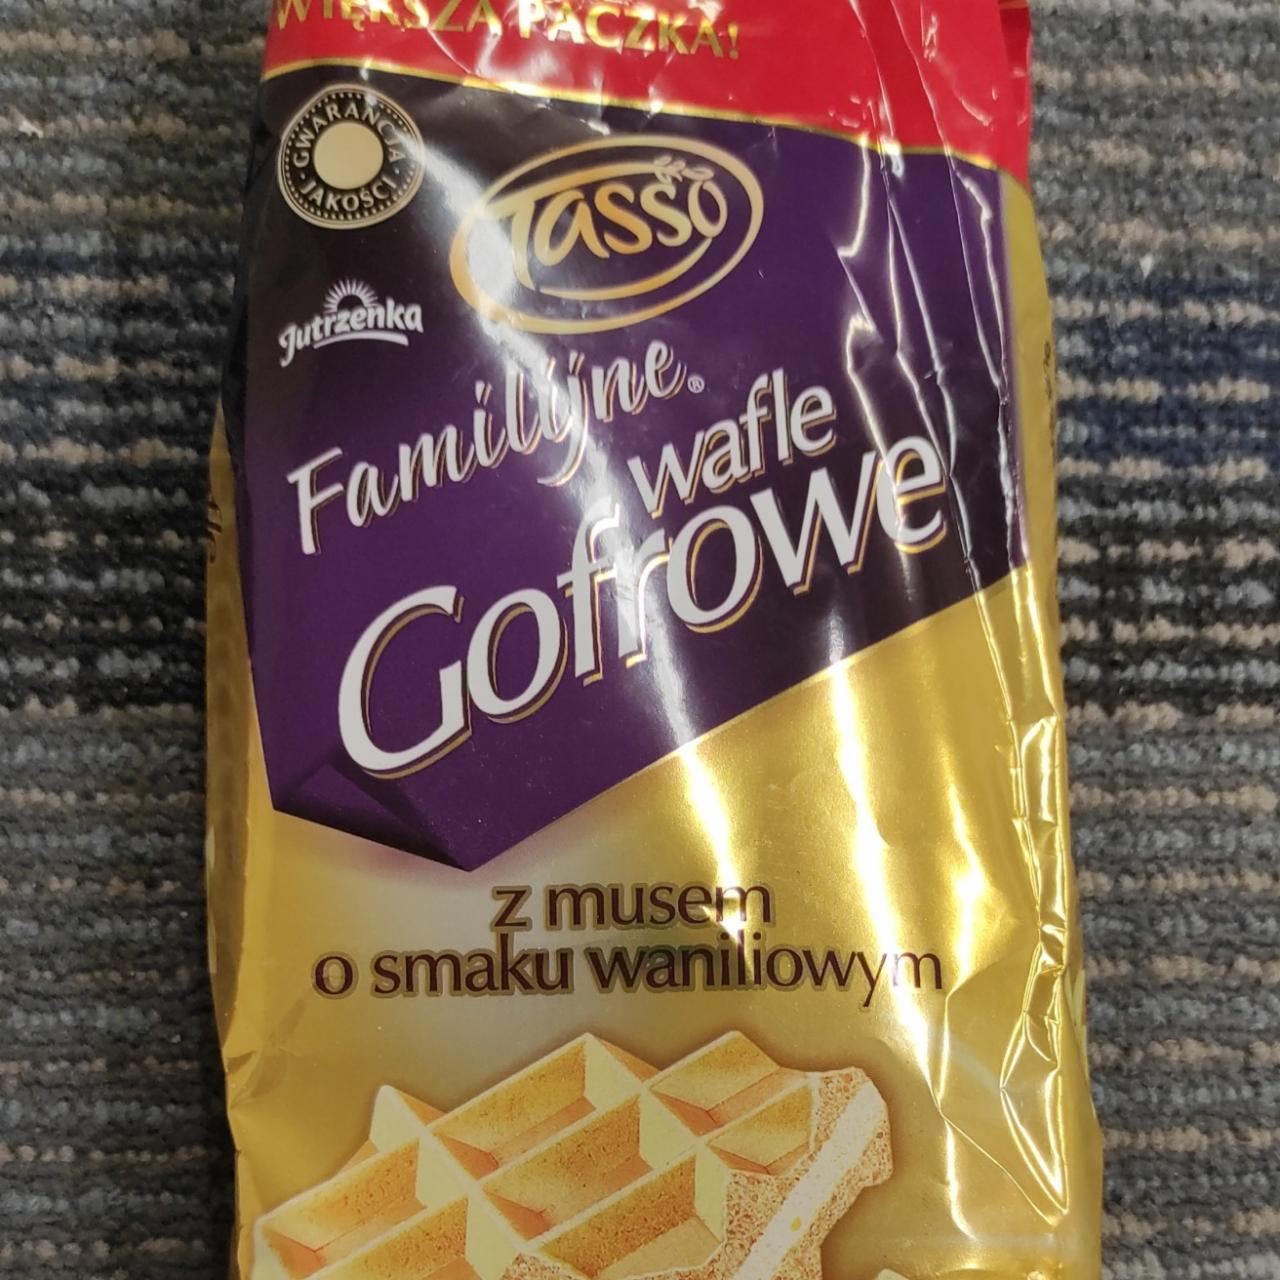 Фото - Familijne wafle Gofrowe z musem o smaku waniliowym Tasso